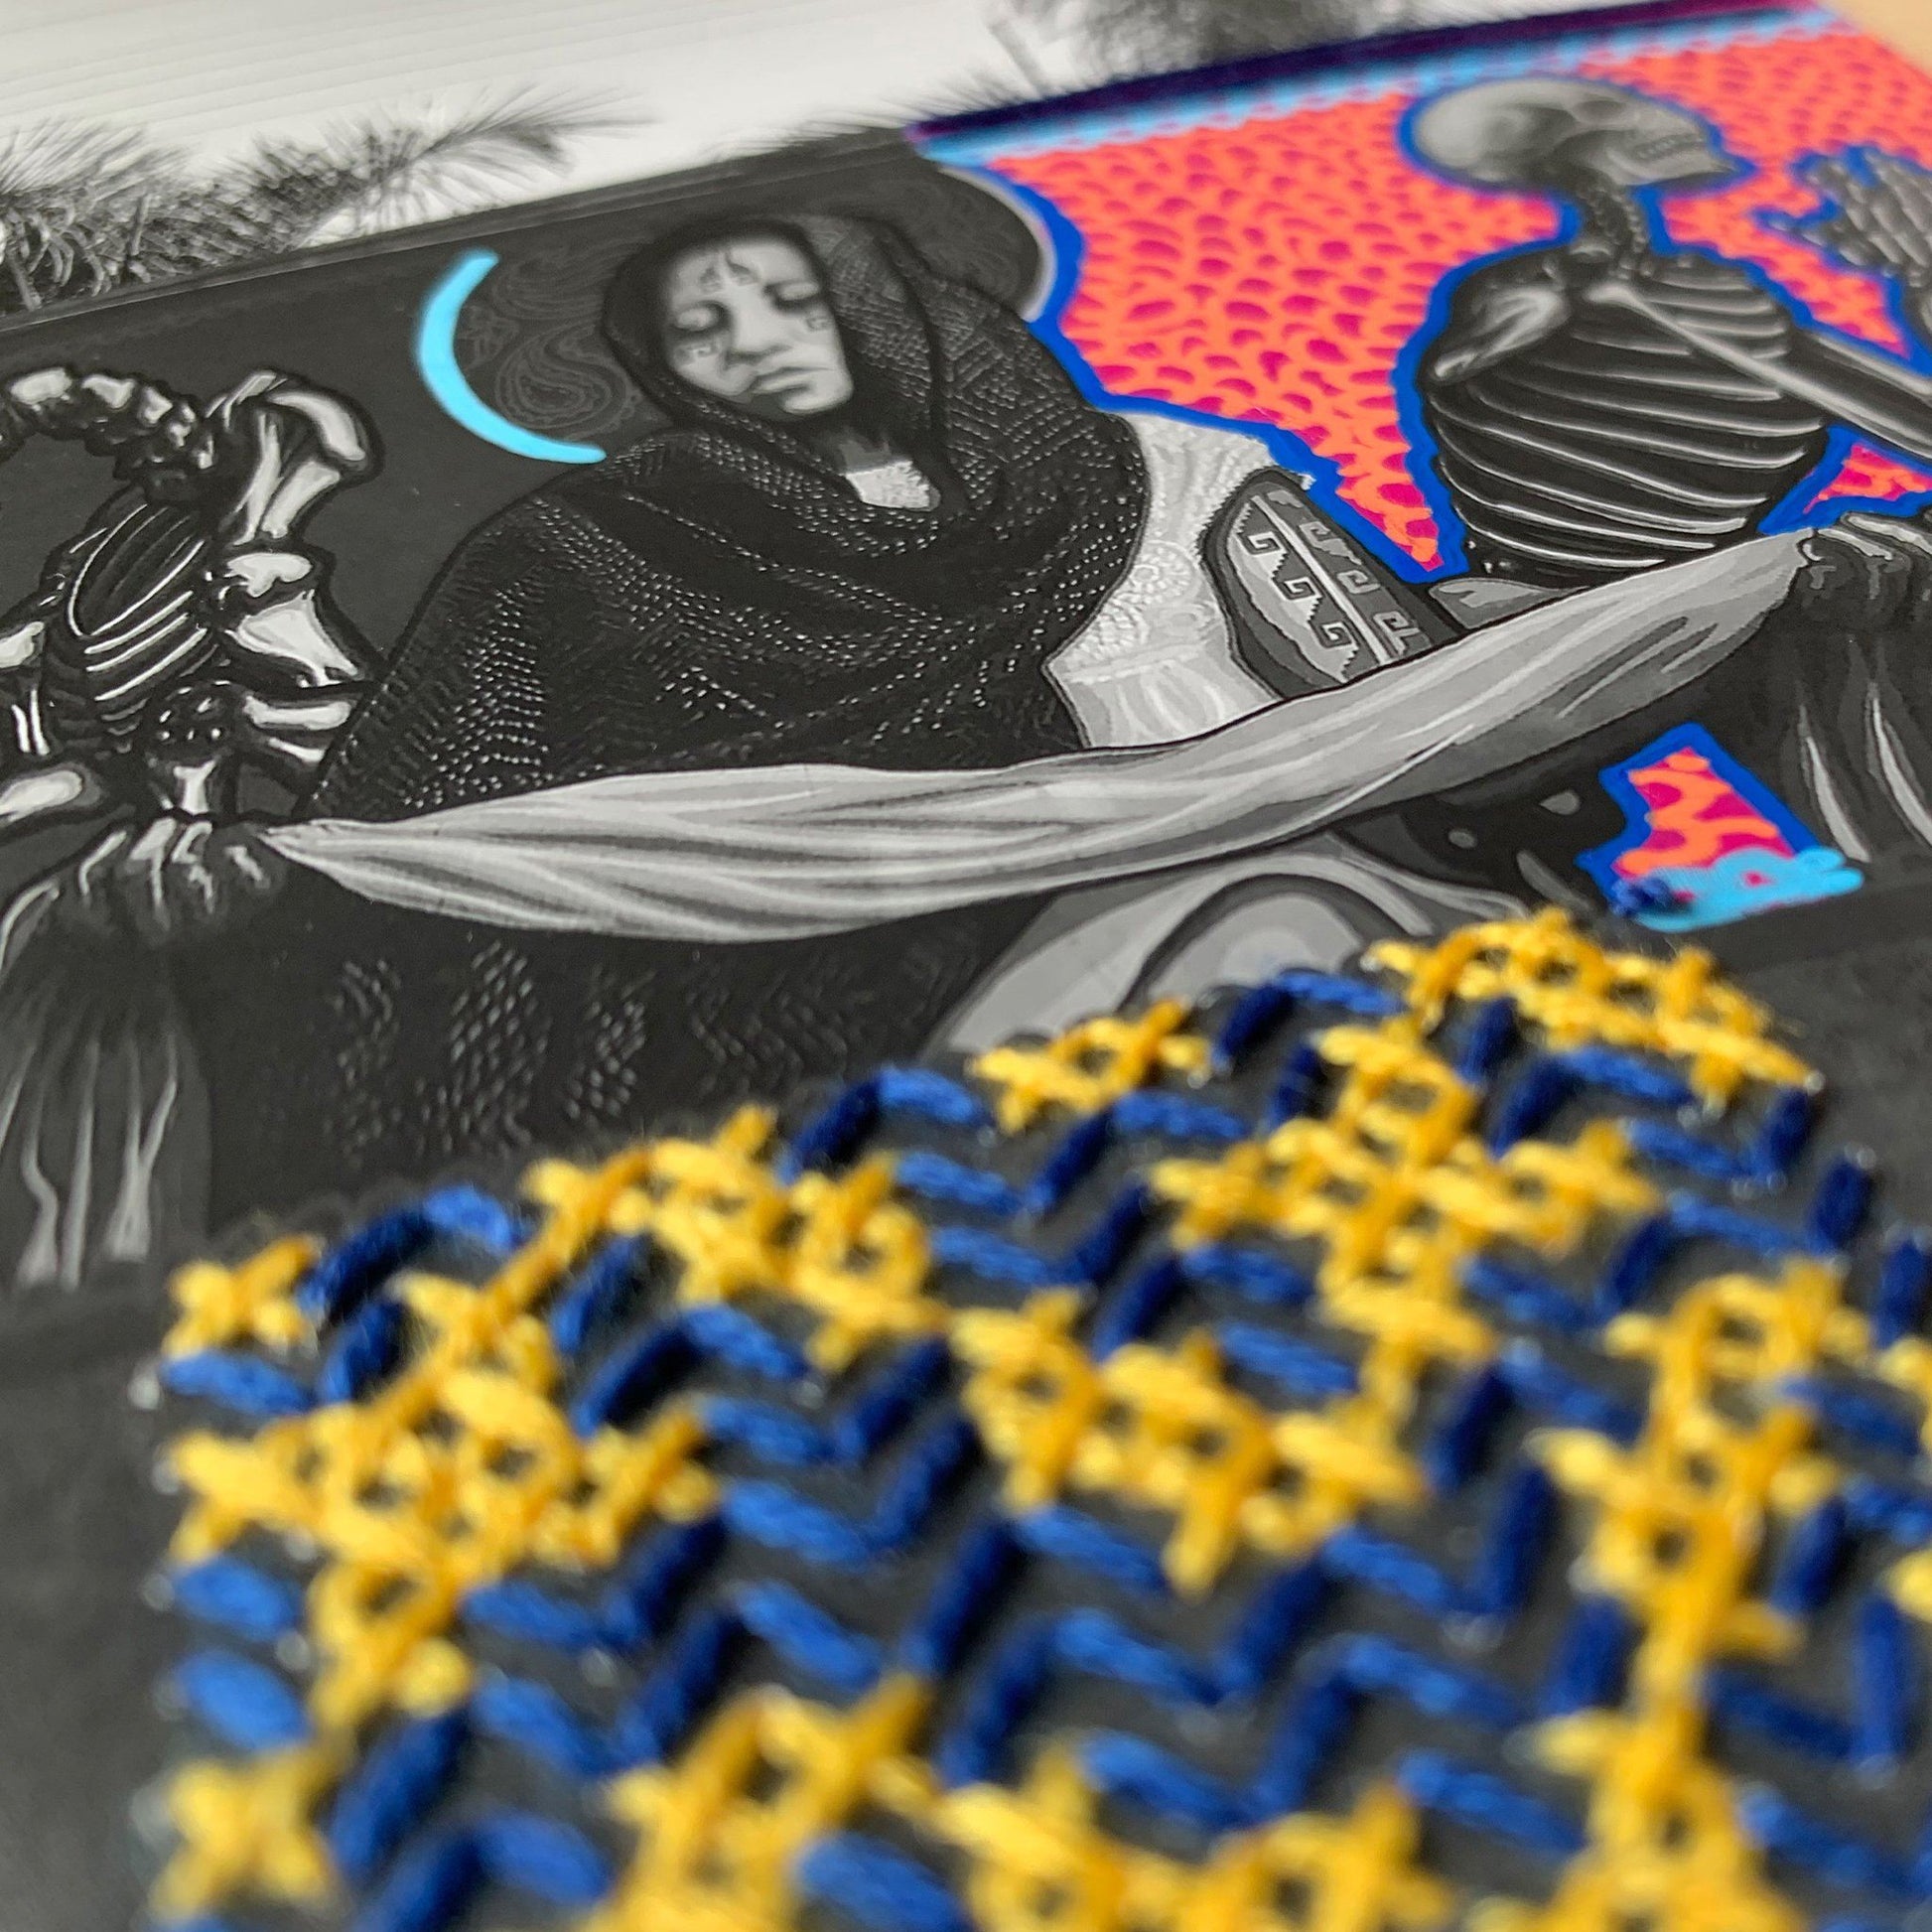 Las Calles de Mexico: Graffiti embroidery art - Catalina Escallon